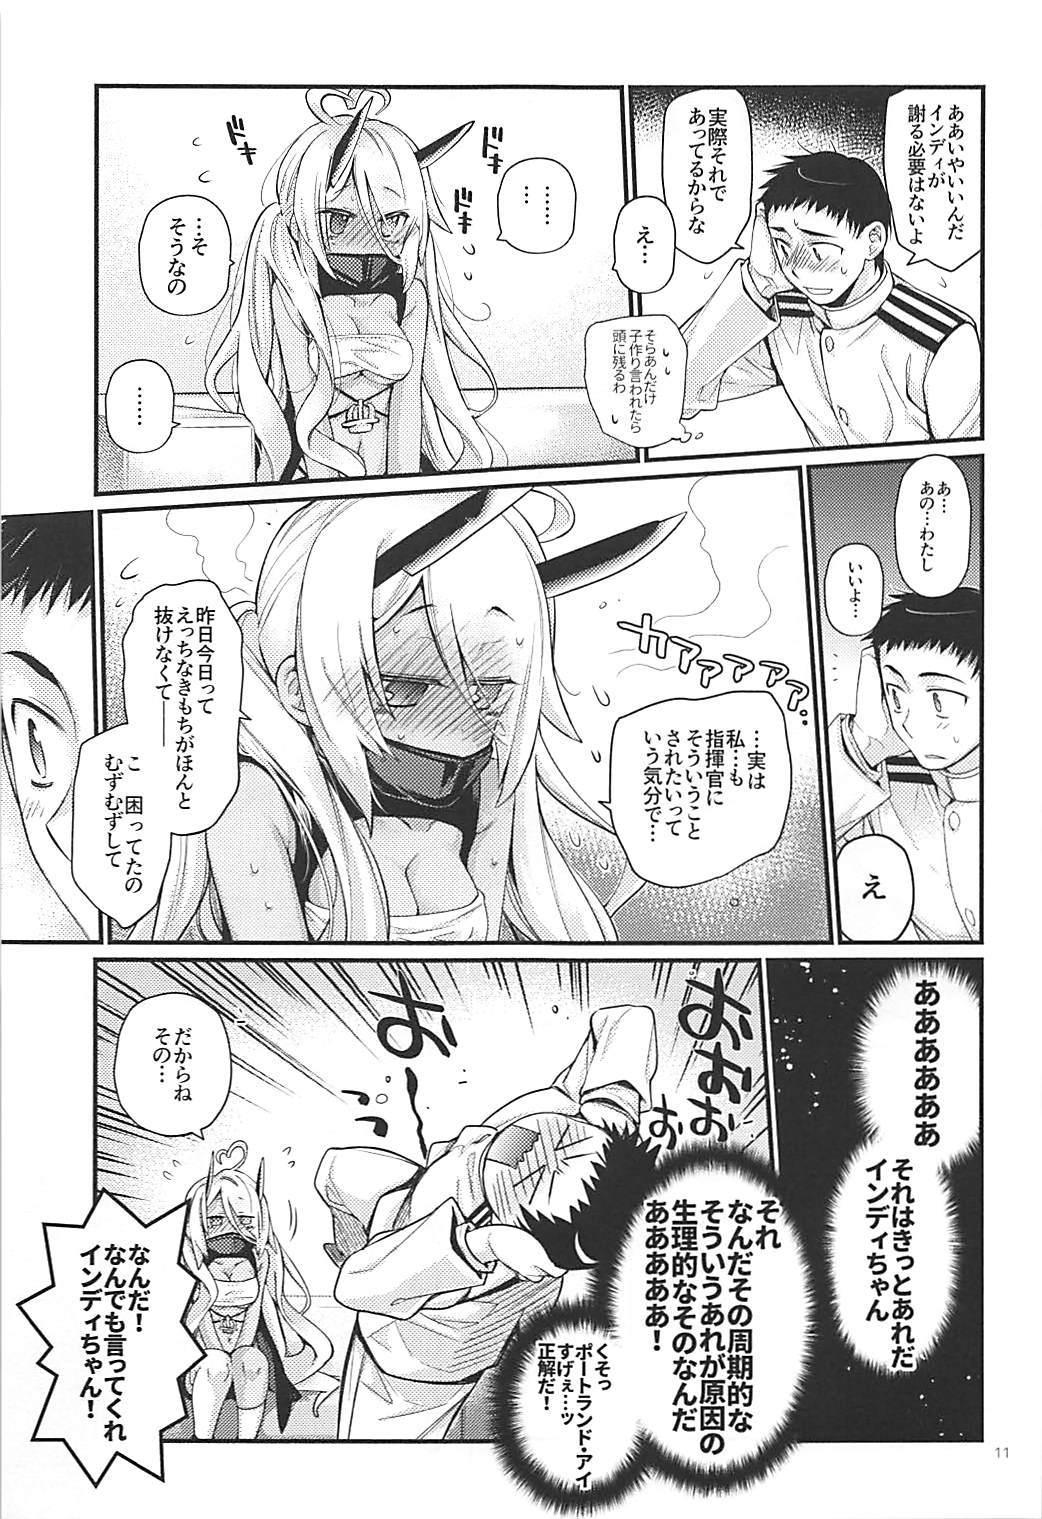 Creamy Uchi no Imouto wa Sekaiichi Kawaiin desu kedo! 2 - Azur lane Paja - Page 10